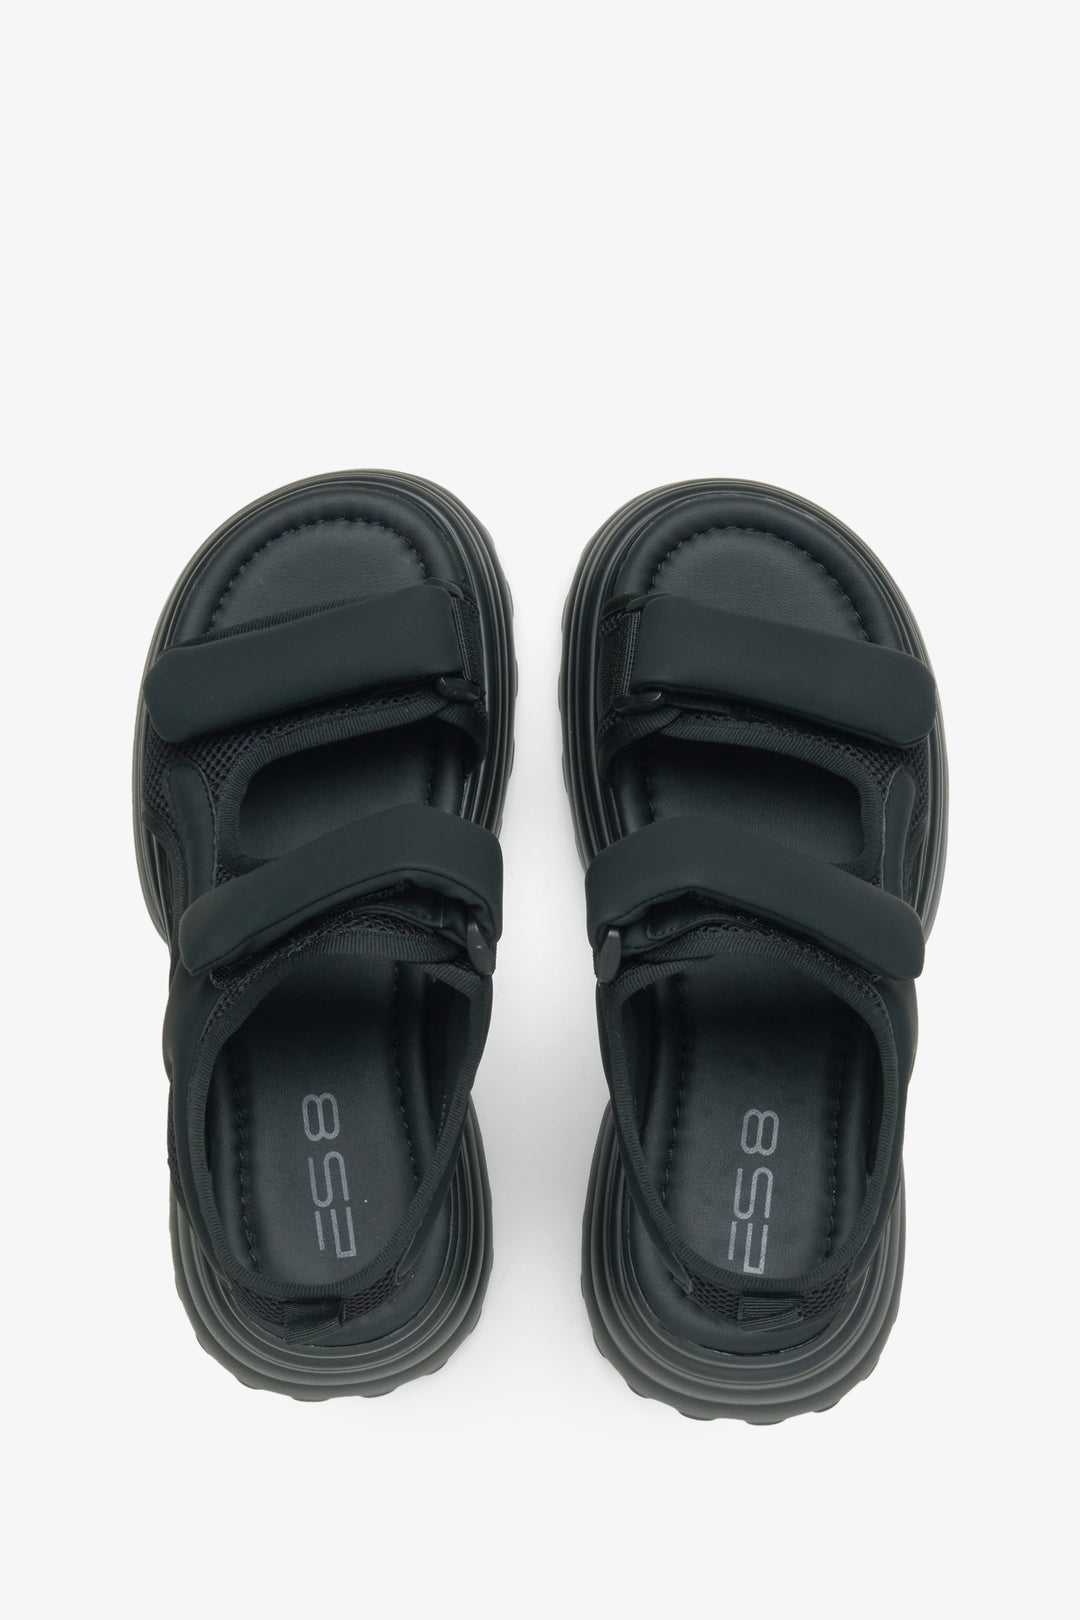 Damskie czarne sandały o sportowym kroju na rzep - prezentacja modelu z góry.